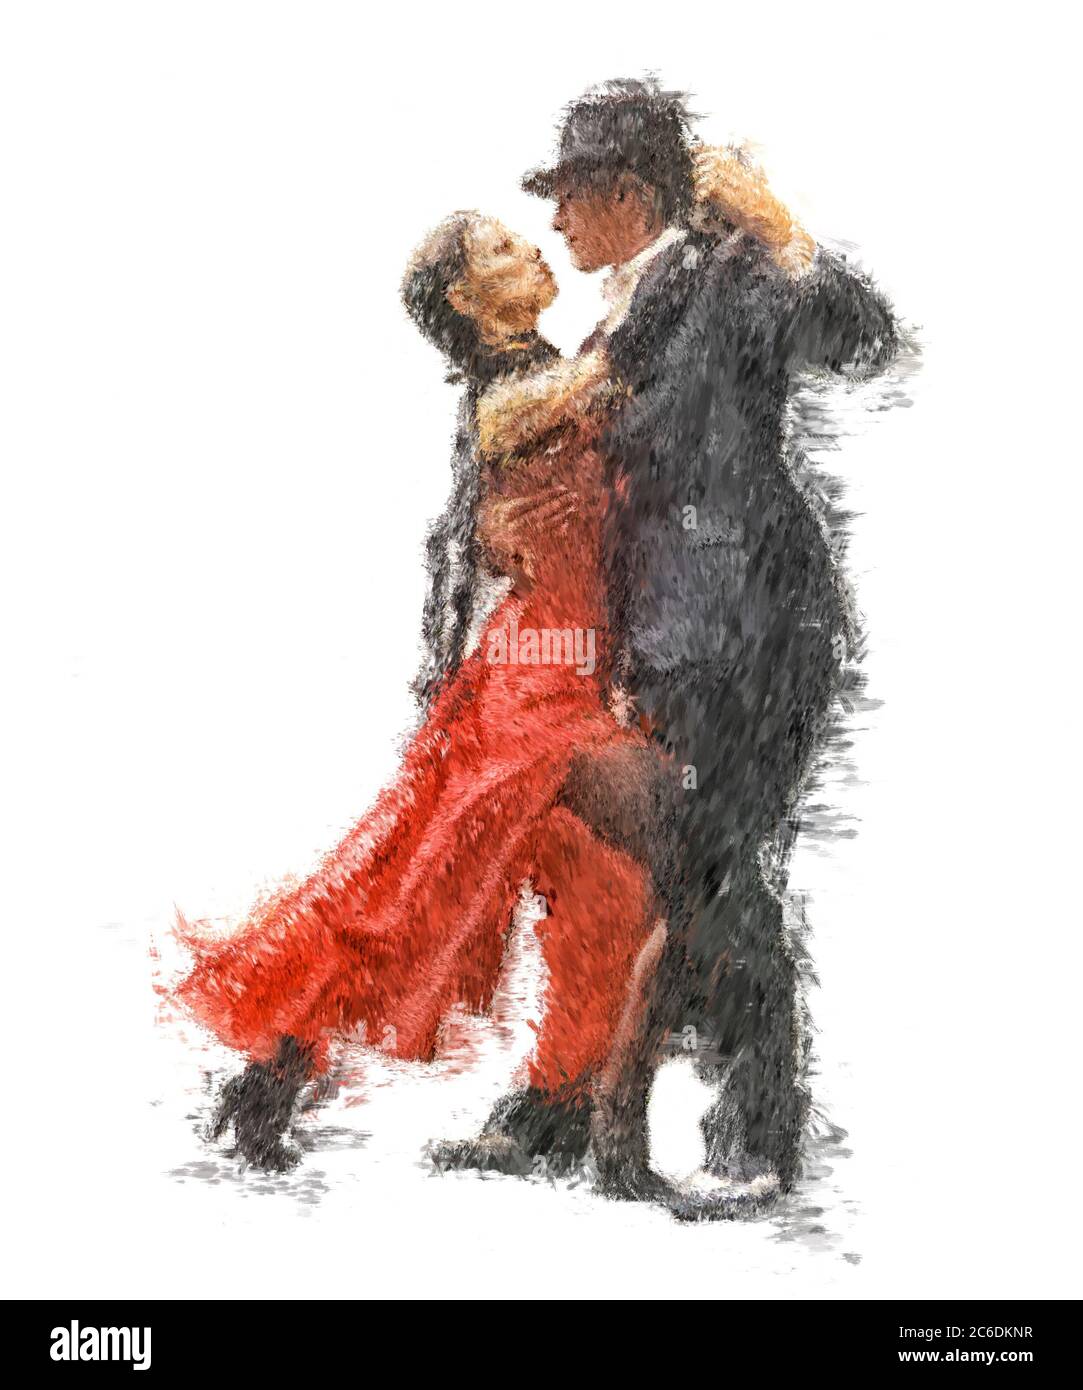 danseurs de tango peints dans un style impressionniste isolé sur fond blanc Banque D'Images